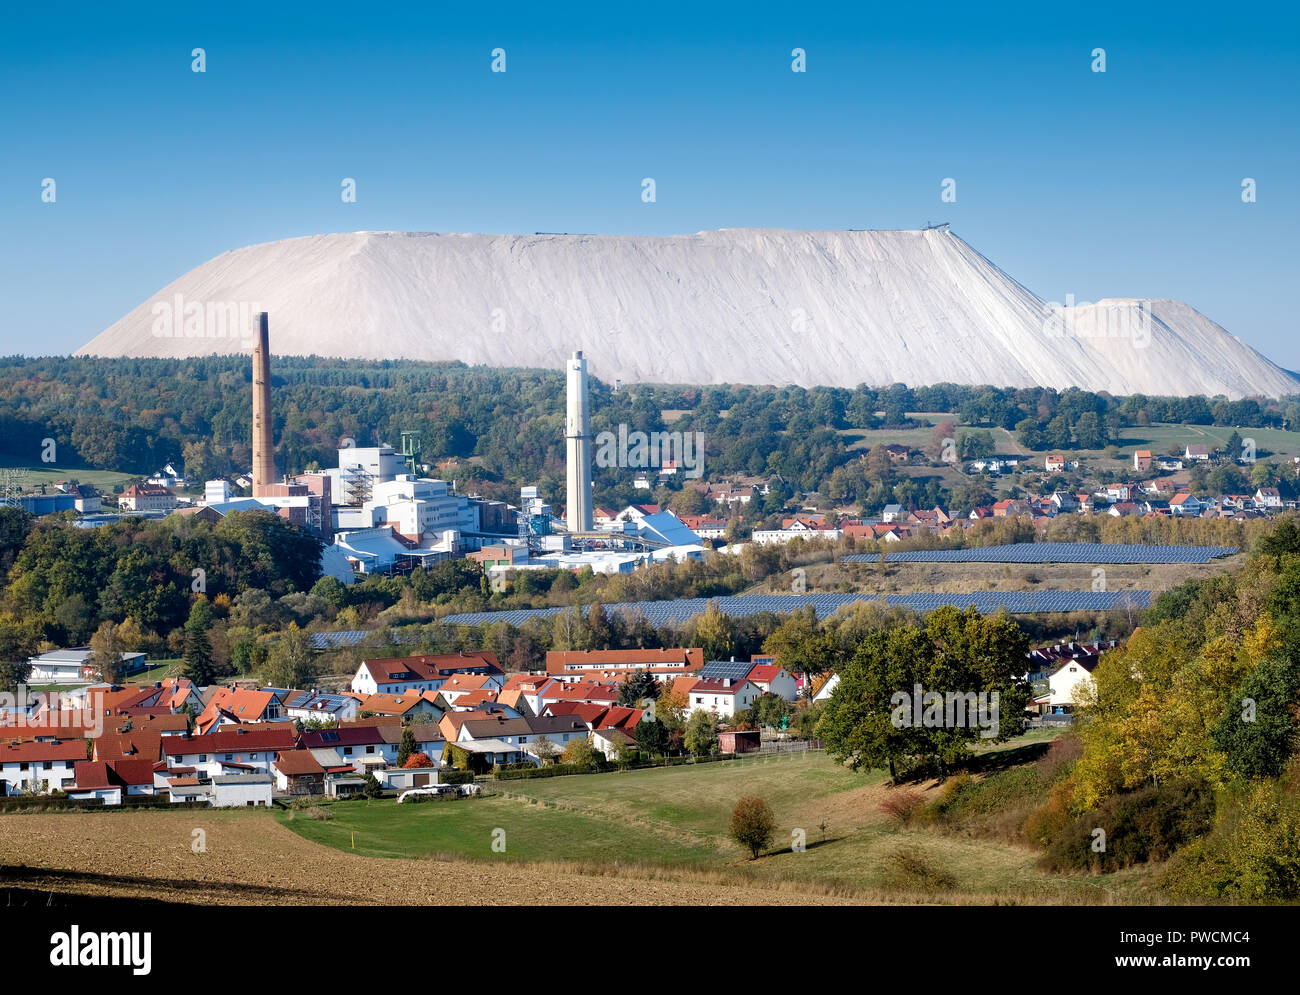 Impianto di cloruro di potassio e di discarica di rifiuti della società K + S Kali GmbH, Werra impianto, ubicazione Unterbreizbach, Turingia, Germania, 14.10.2018 Foto Stock